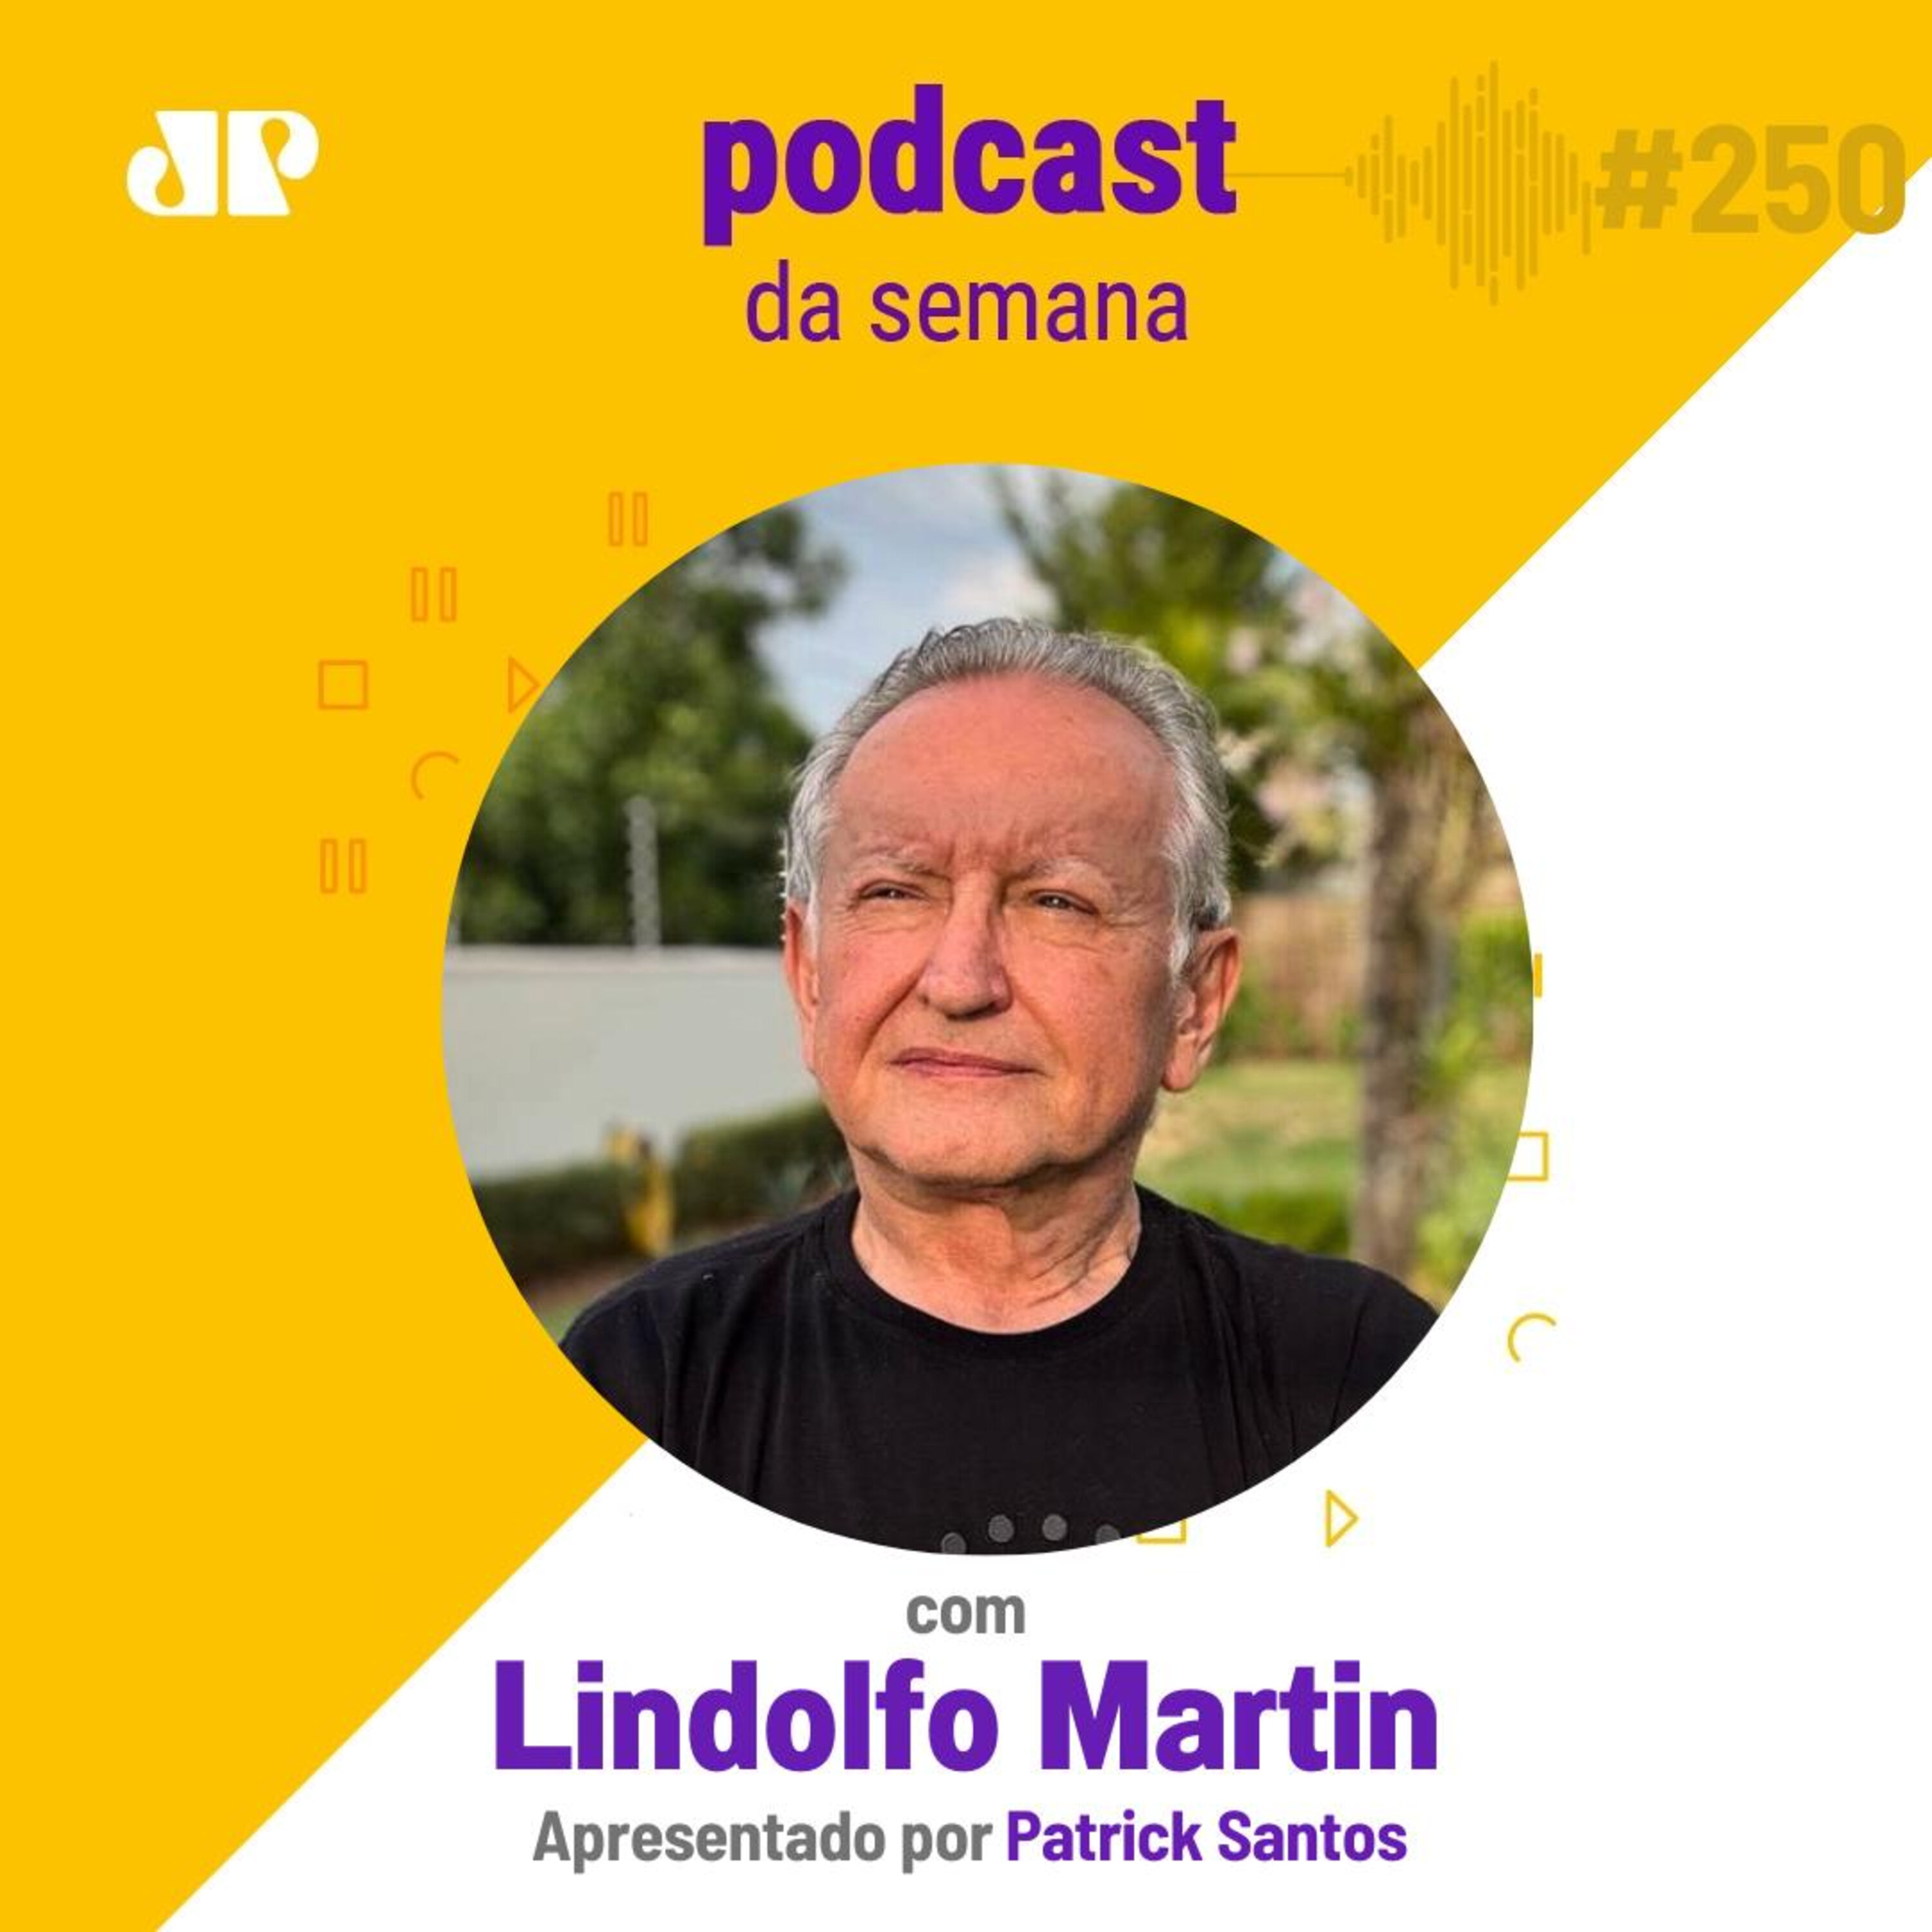 Lindolfo Martin - "O caminho é humanizar os negócios"